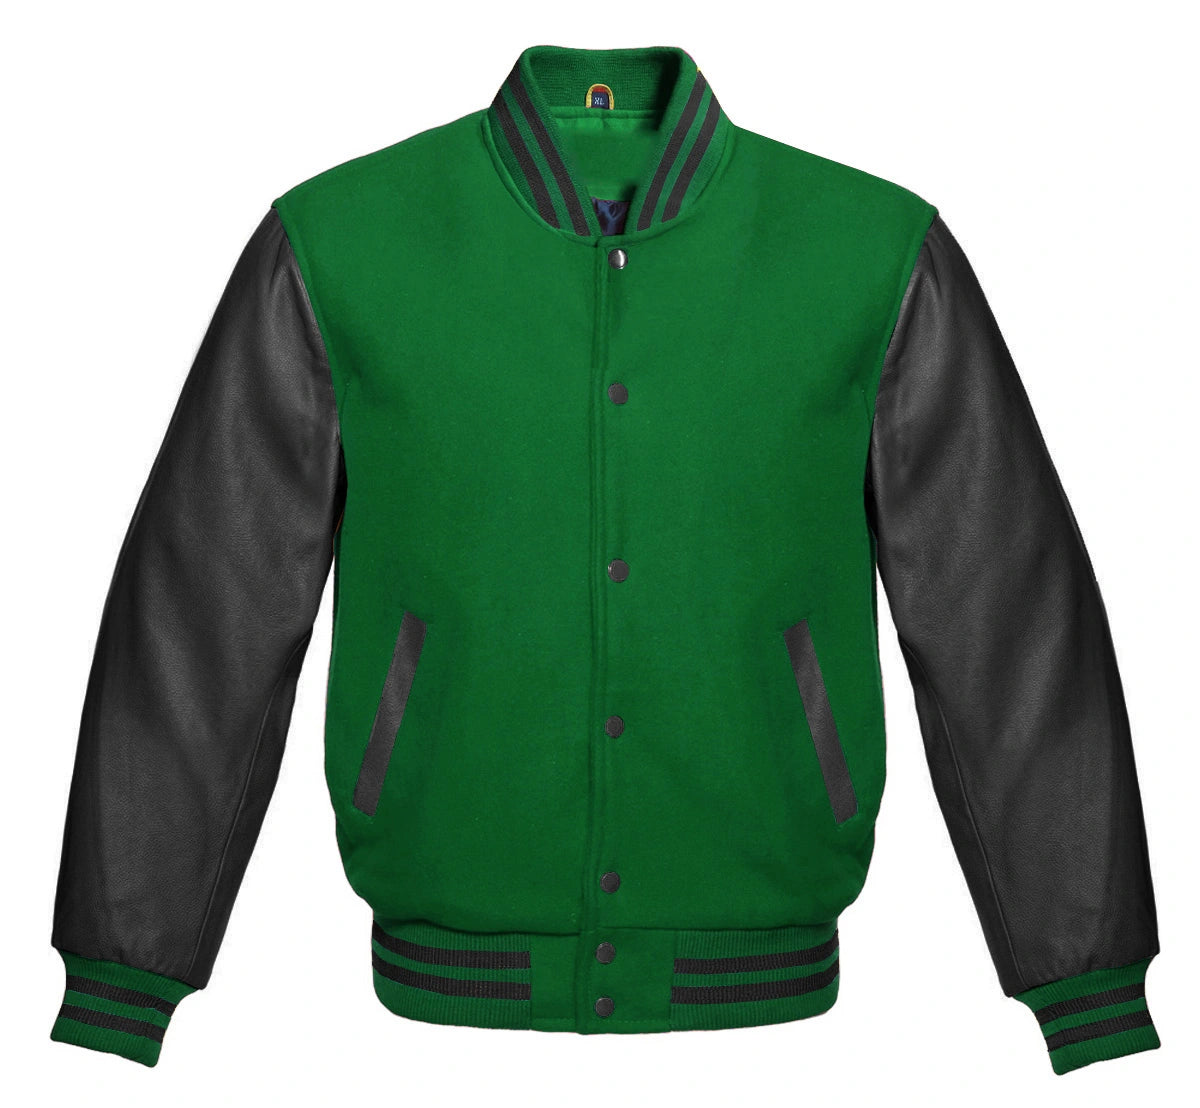 Green Letterman Jacket